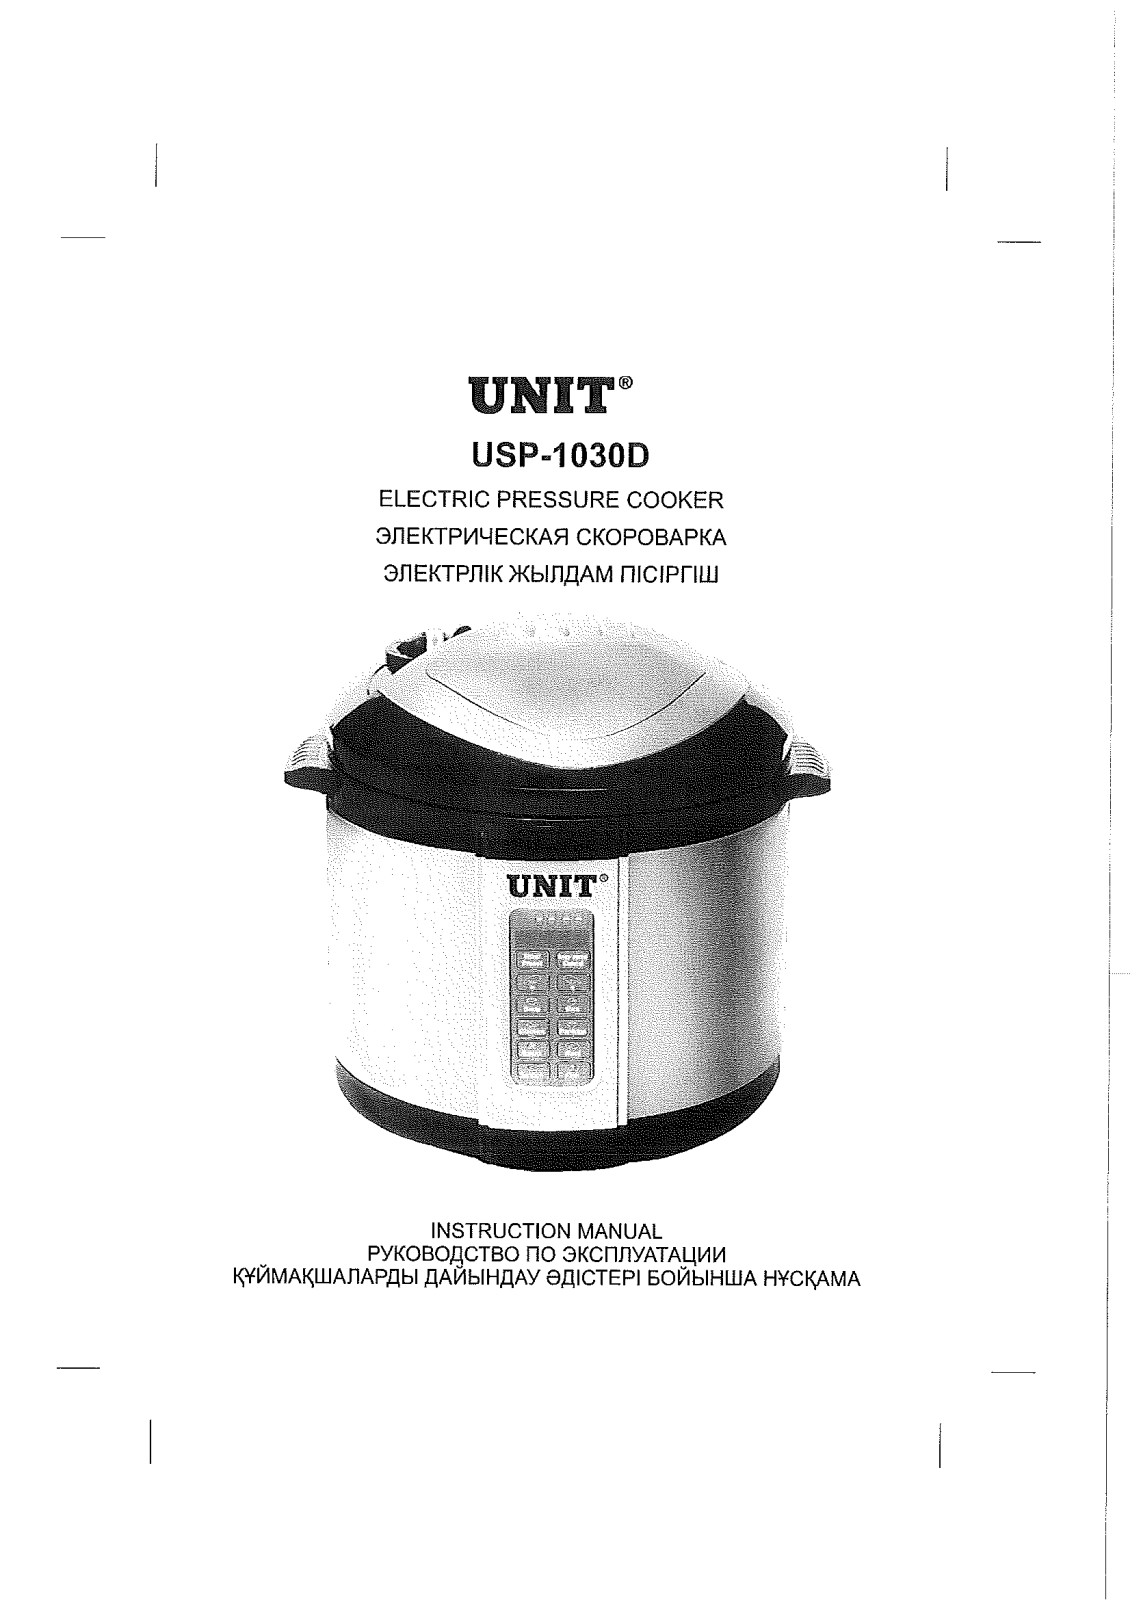 Unit USP-1030D User Manual